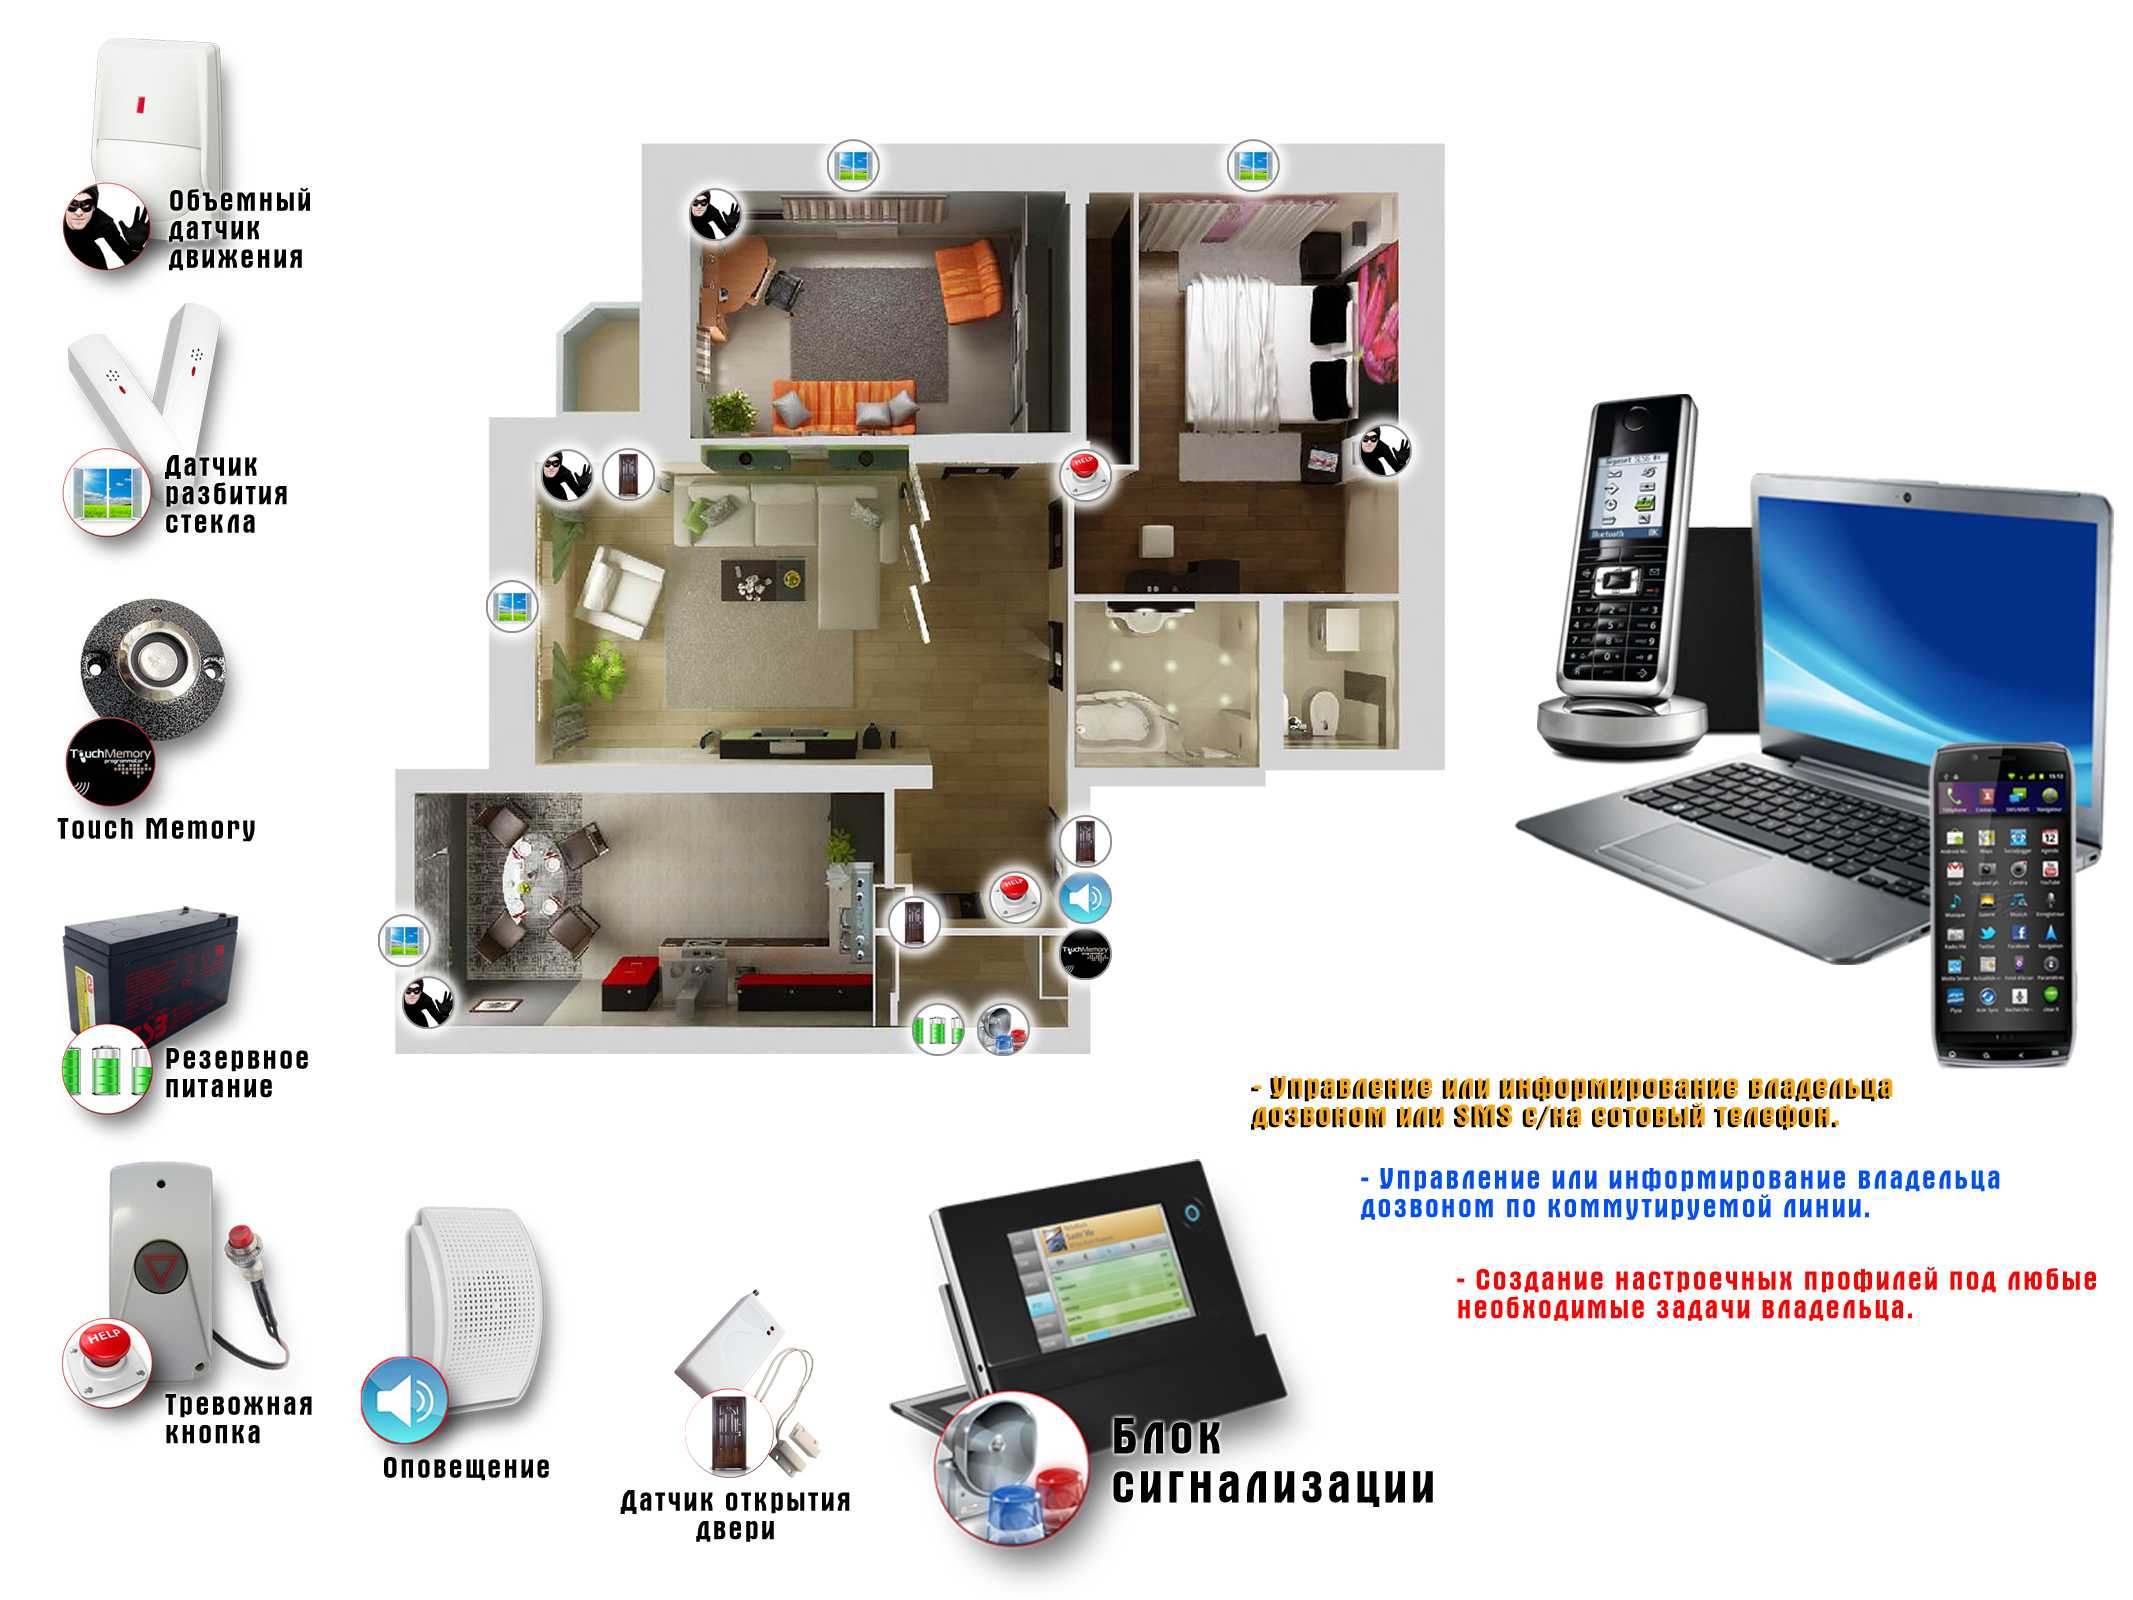 Системы видеонаблюдения для частного дома разделяются на несколько видов. У каждого из них свои преимущества и особенности использования.